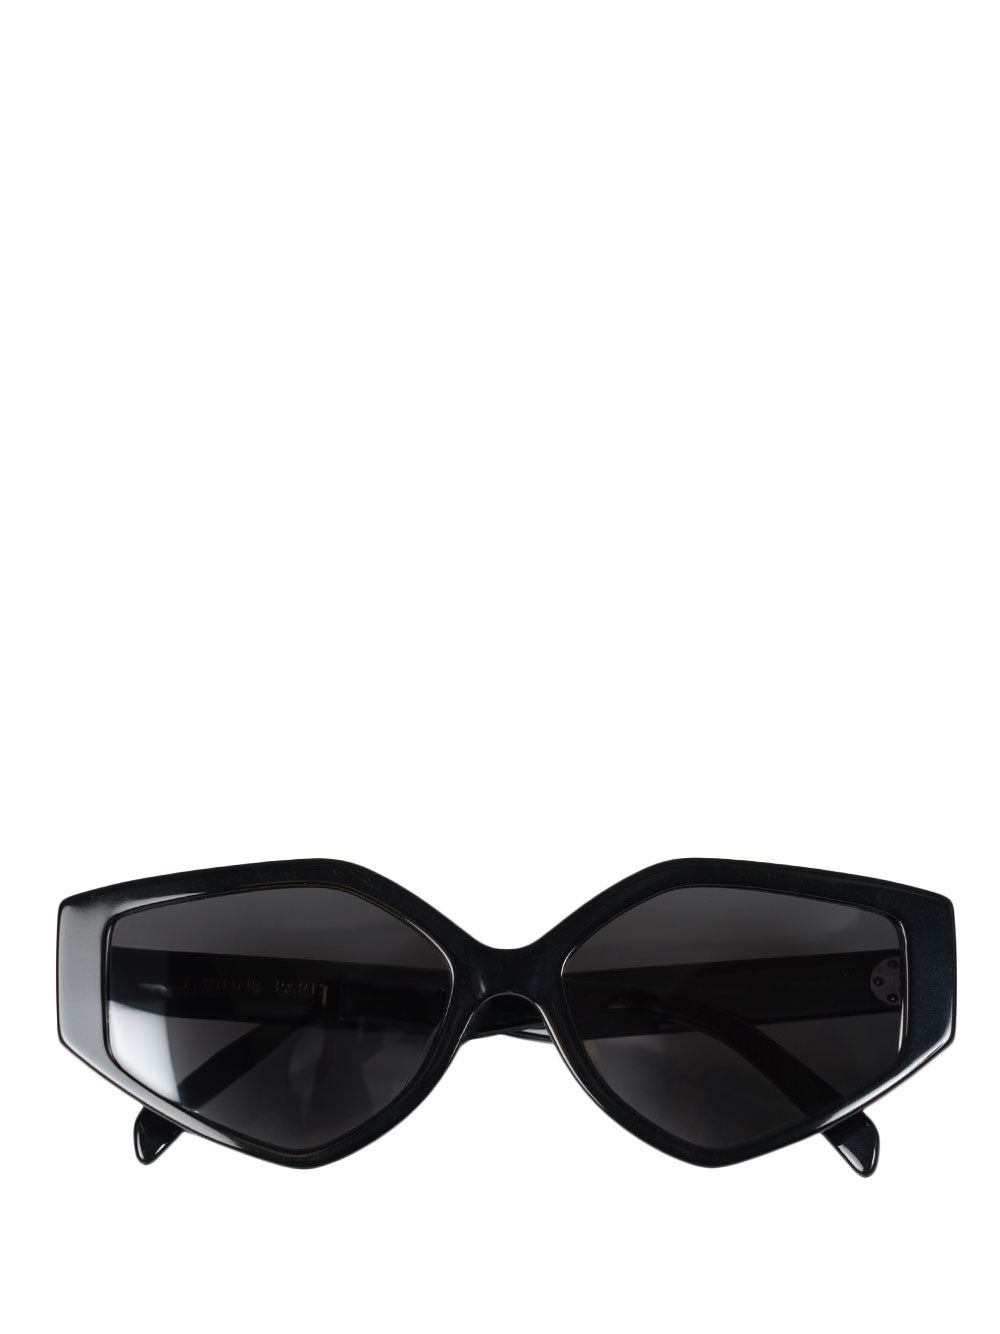 Hexagonal sunglasses